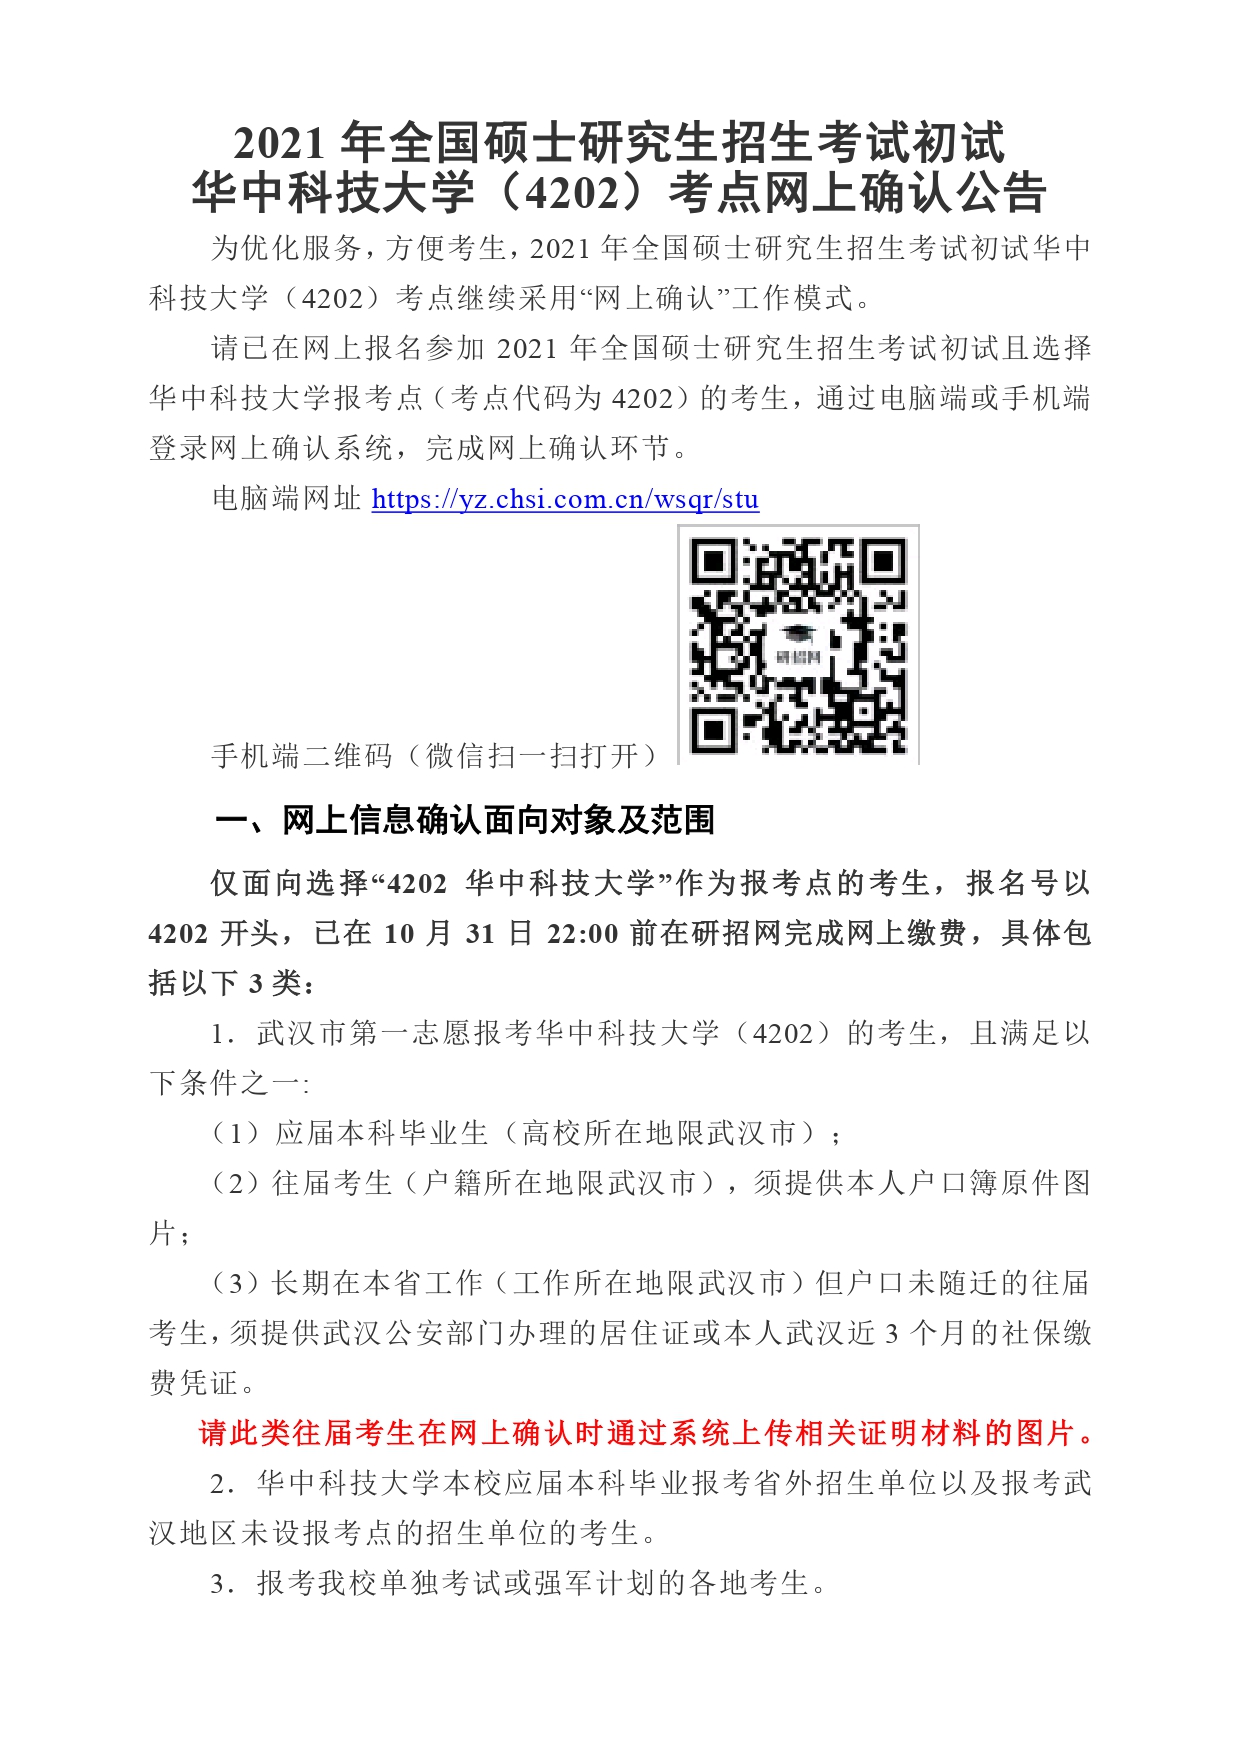 华中科技大学(4202)考点2021年网上确认公告（1）